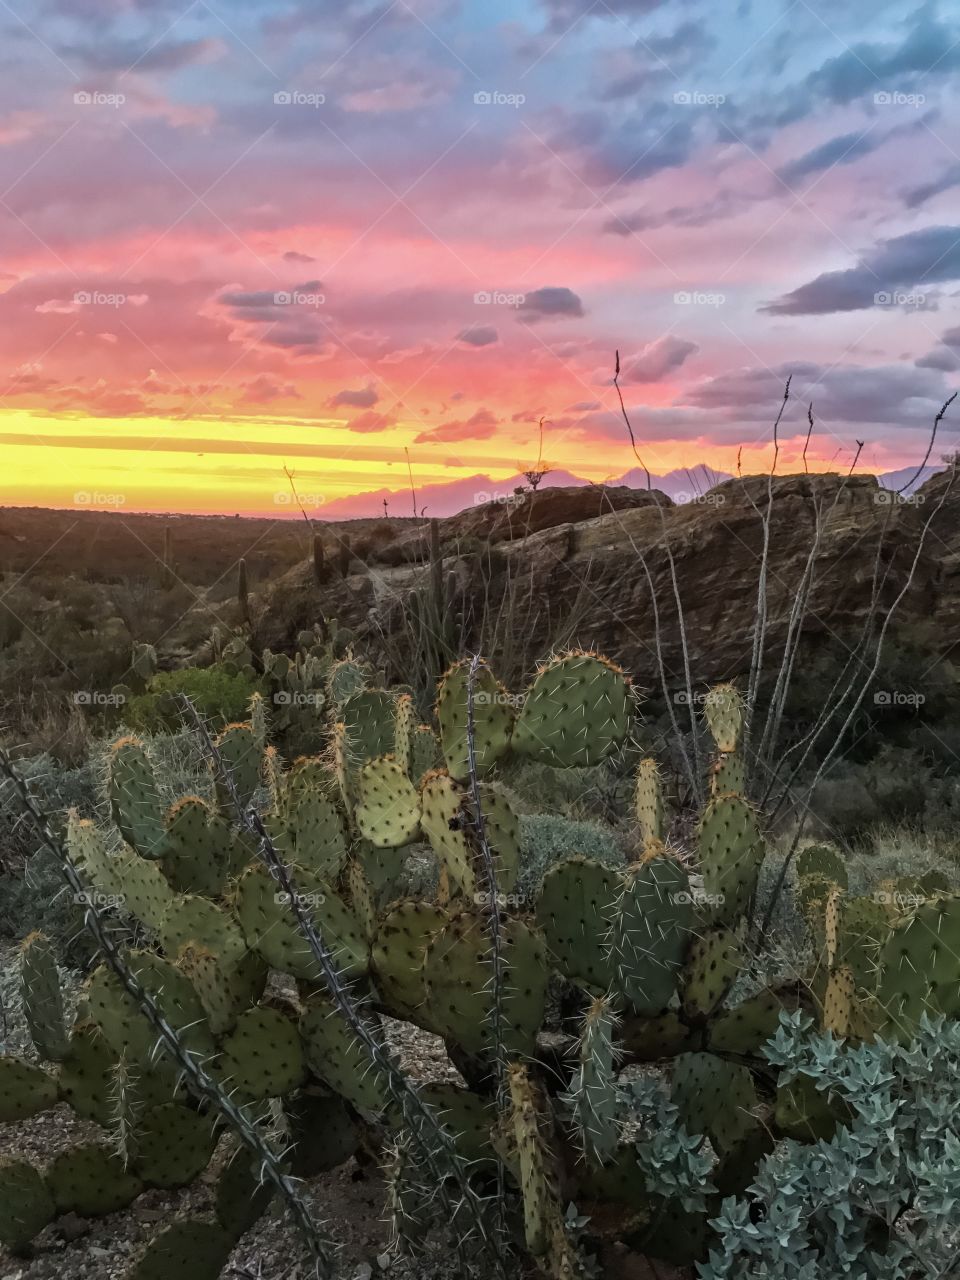 Desert sunset 